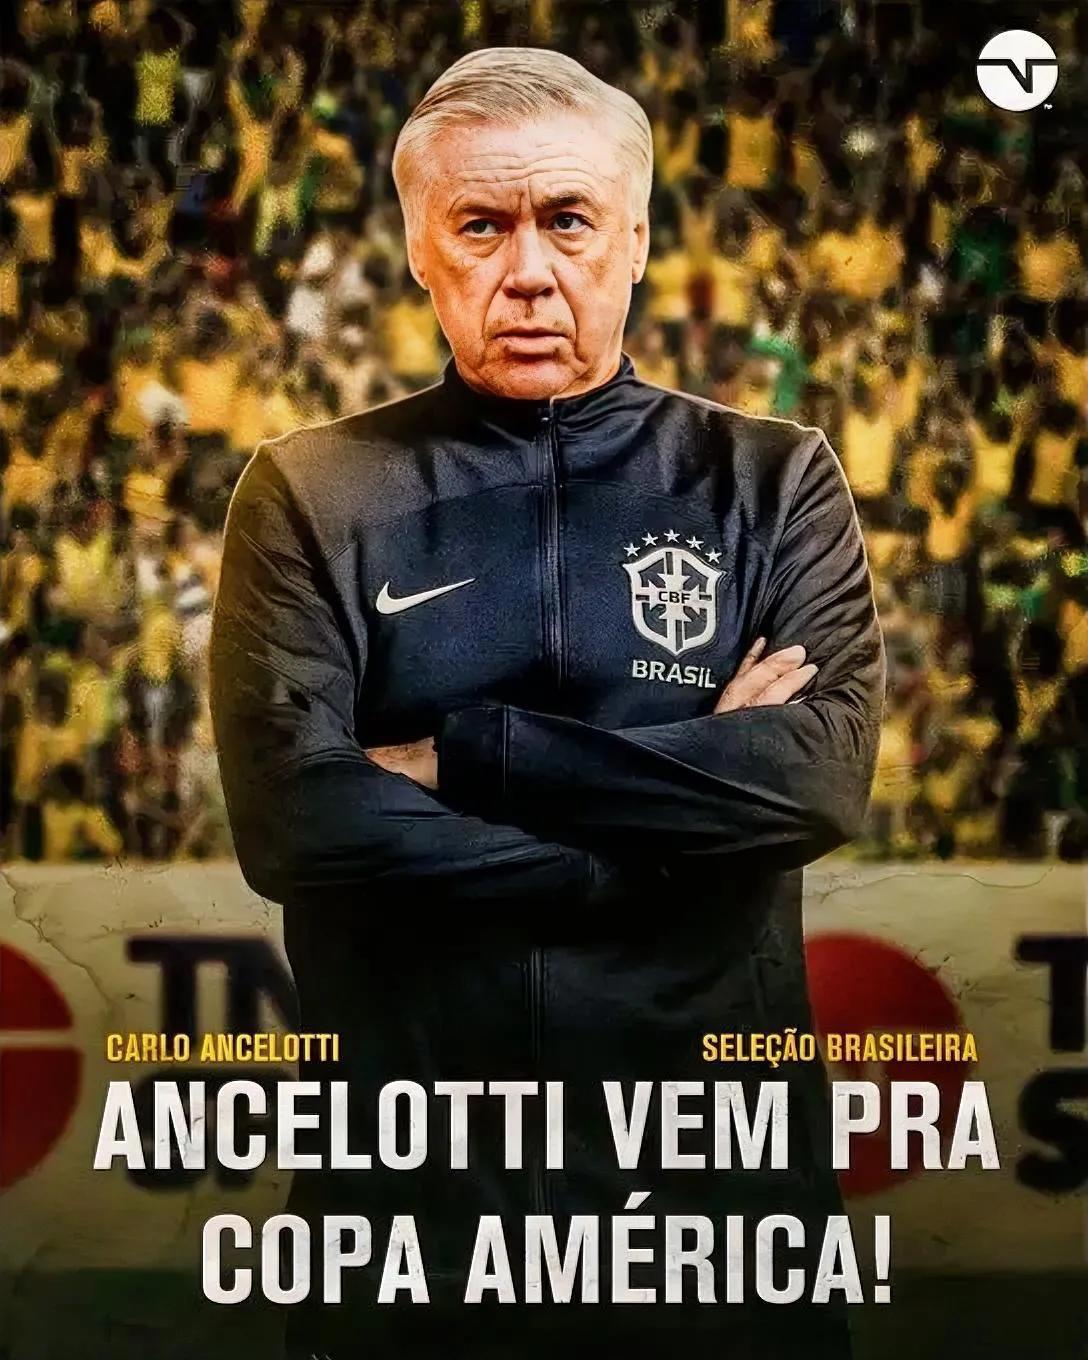 足坛要变天了，巴西主席官宣安切洛蒂执教巴西！

据巴西媒体报道，巴西足协主席在接